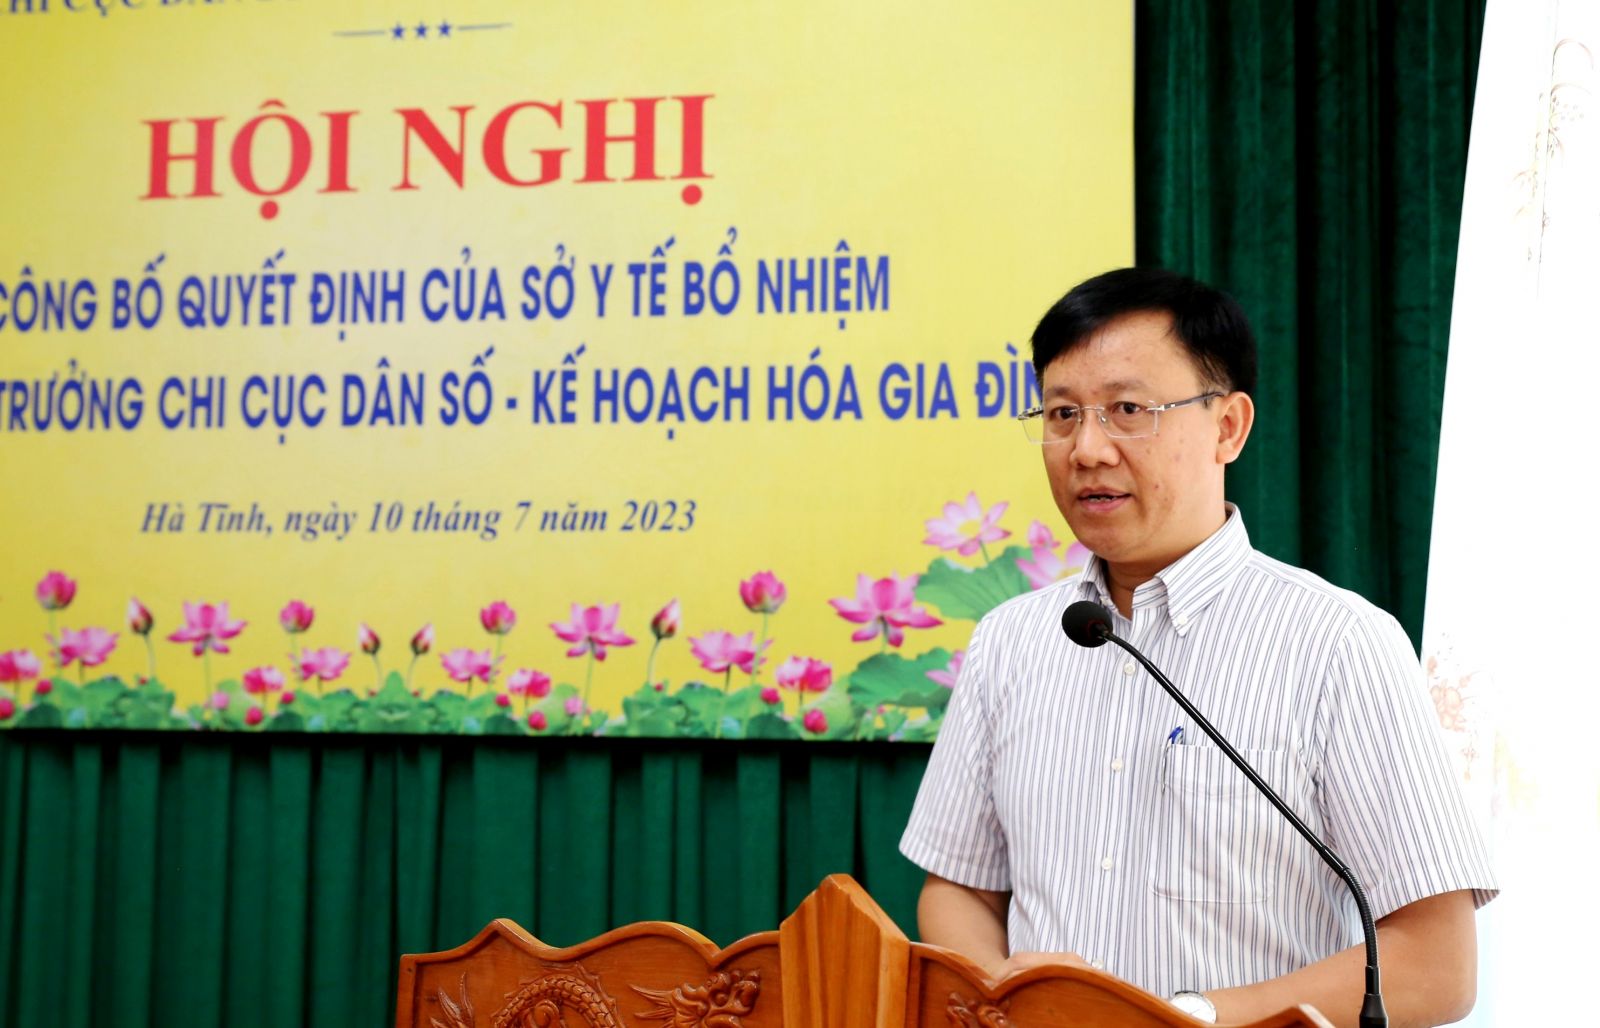 Giám đốc BVĐK Hương Khê làm Chi cục trưởng Chi cục Dân số - KKHGĐ Hà Tĩnh